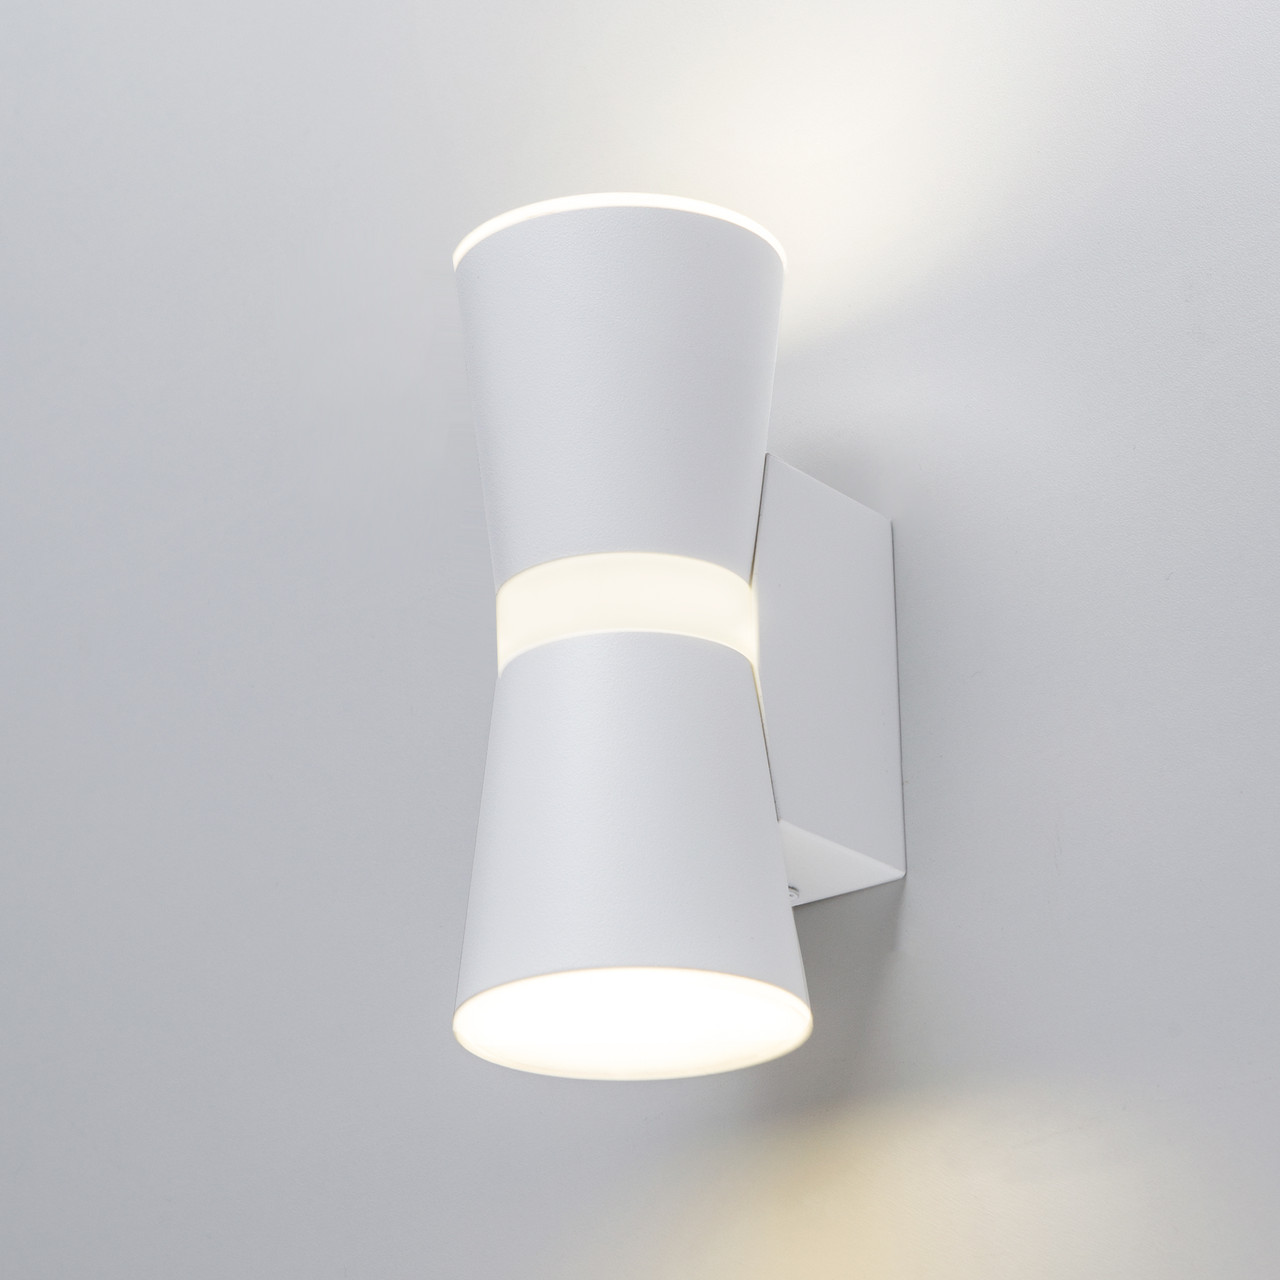 Настенный светодиодный светильник Viare LED белый  MRL LED 1003